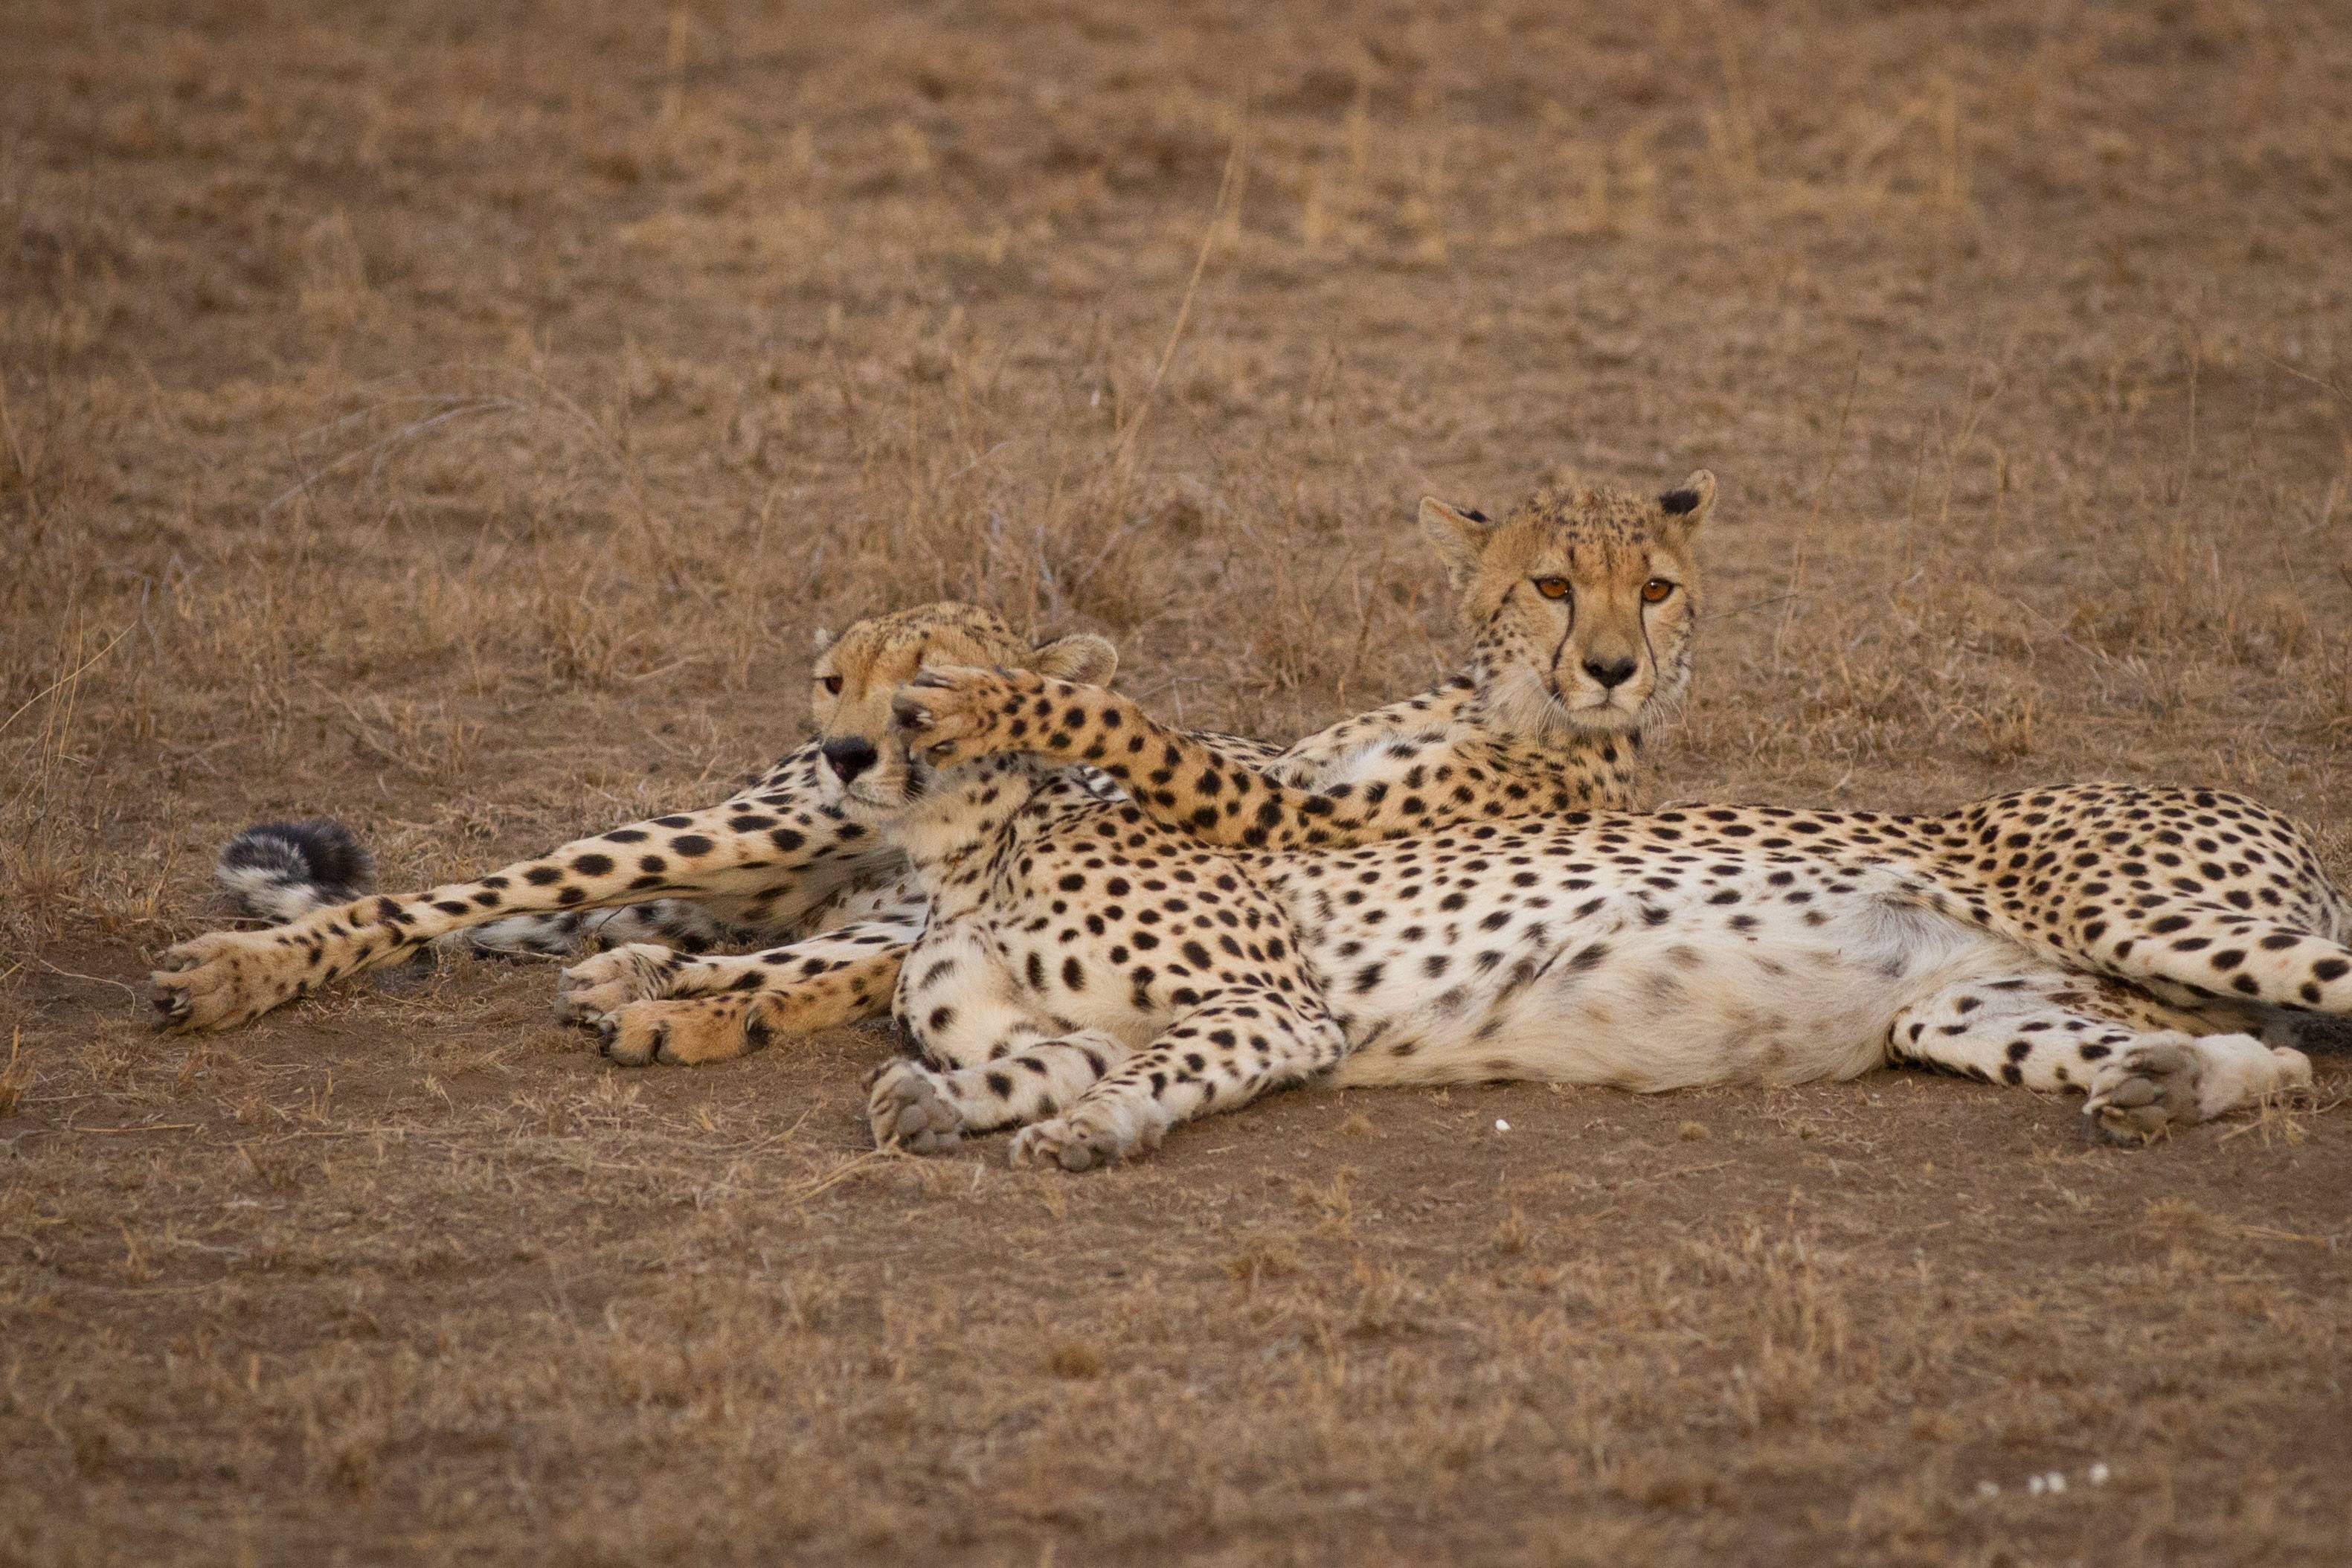 Giornata di avventura nel Parco nazionale del Serengeti!